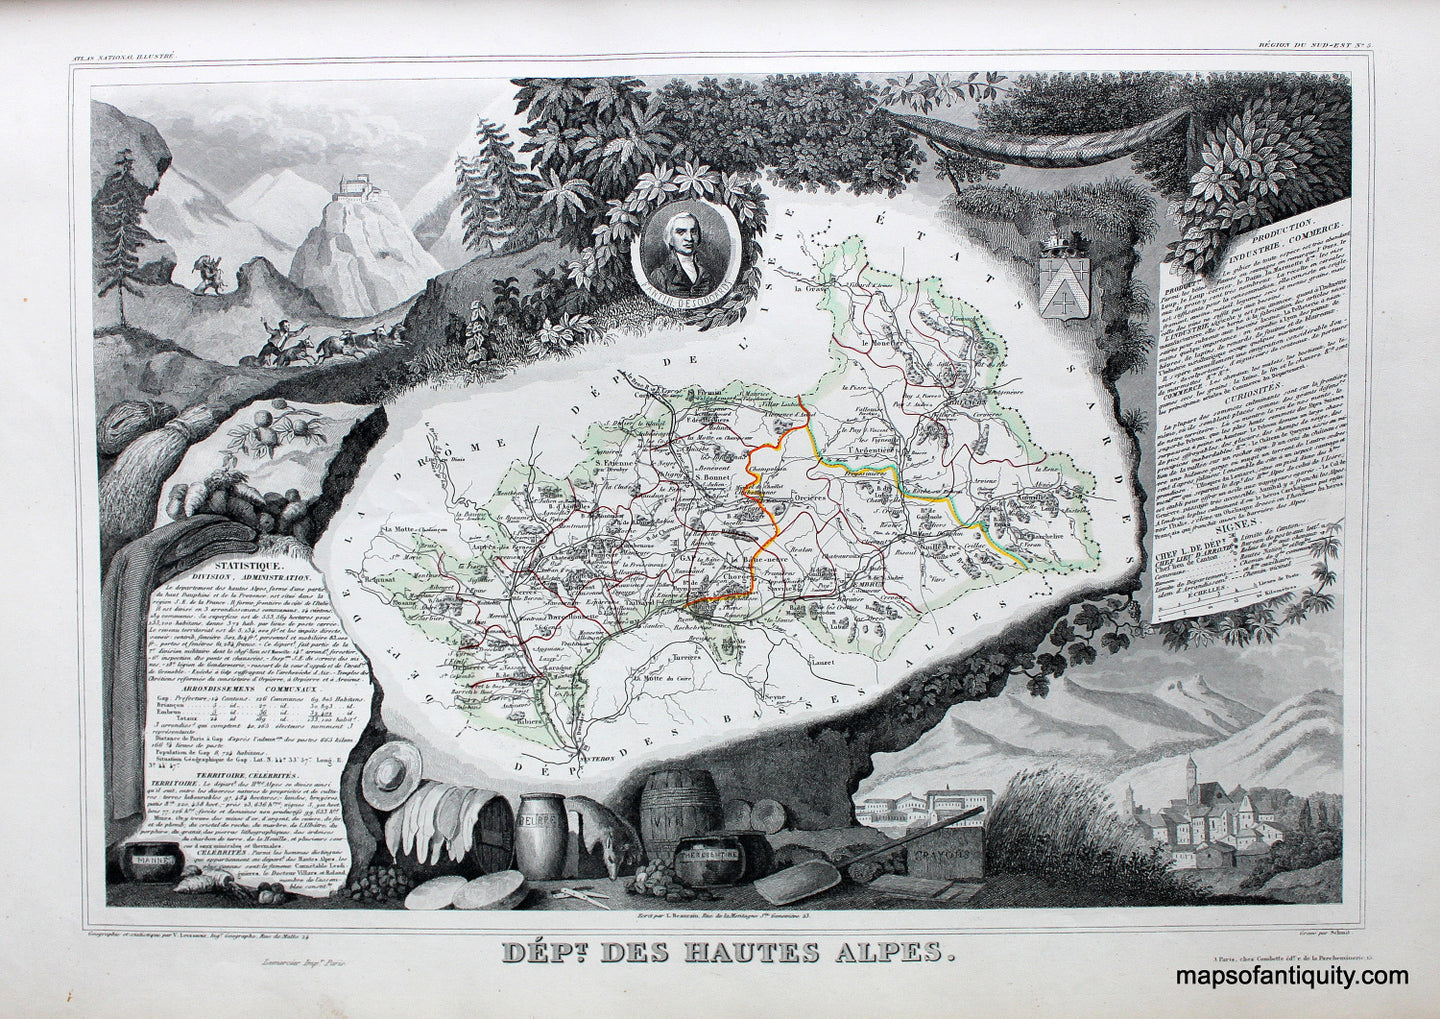 Antique-Hand-Colored-Map-Dept.-des-Hautes-Alpes.-Europe-France-1851-Levasseur-Maps-Of-Antiquity